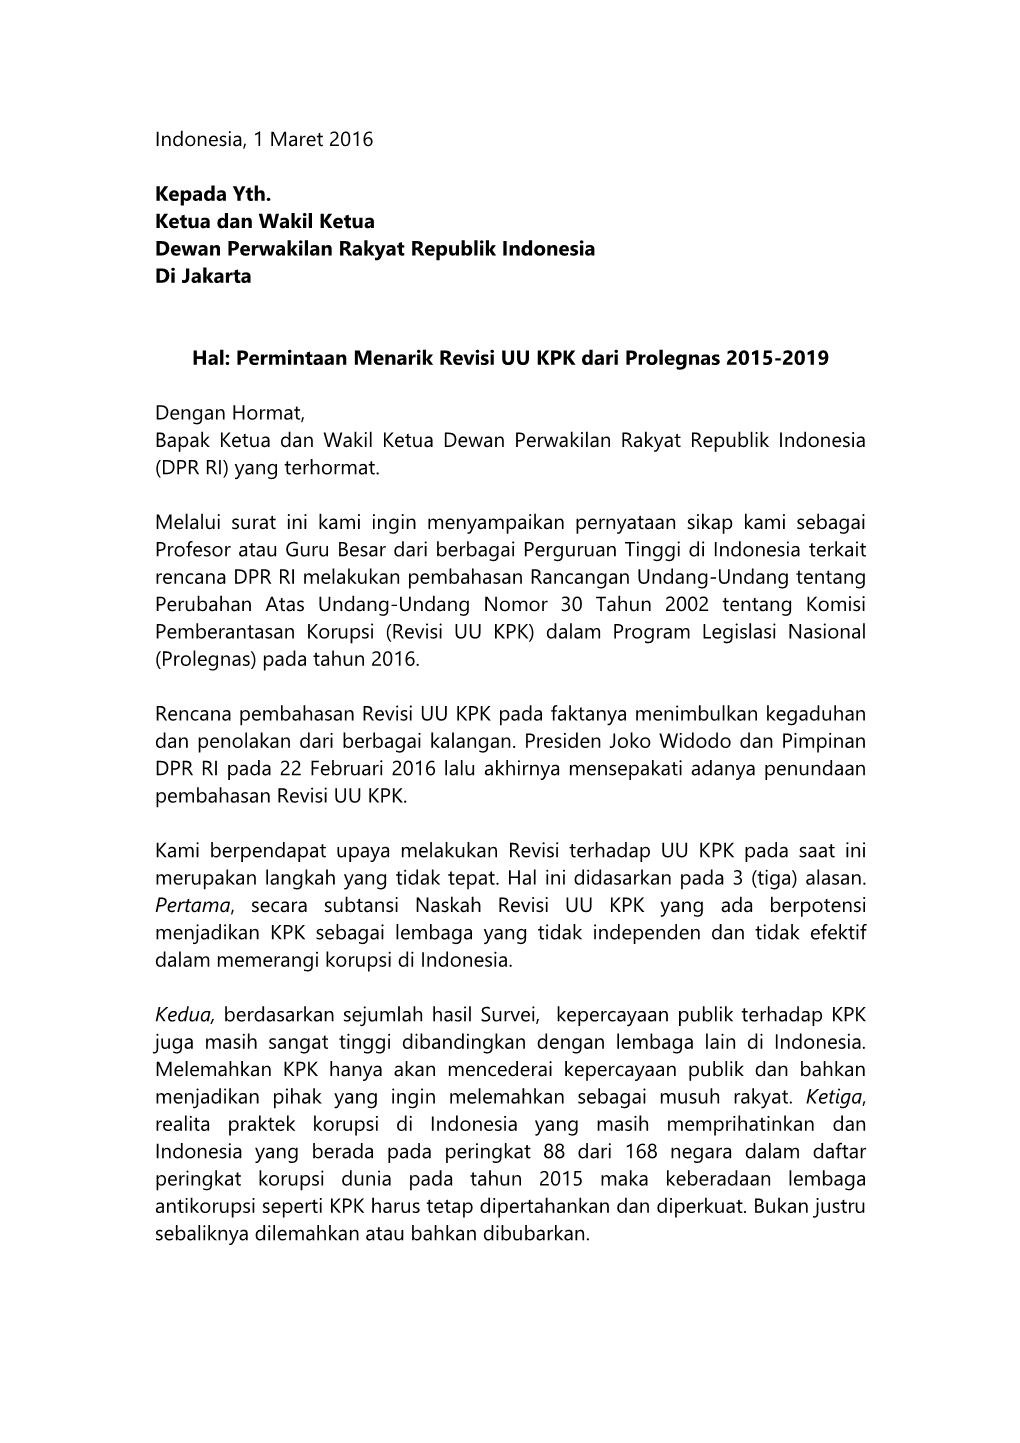 Indonesia, 1 Maret 2016 Kepada Yth. Ketua Dan Wakil Ketua Dewan